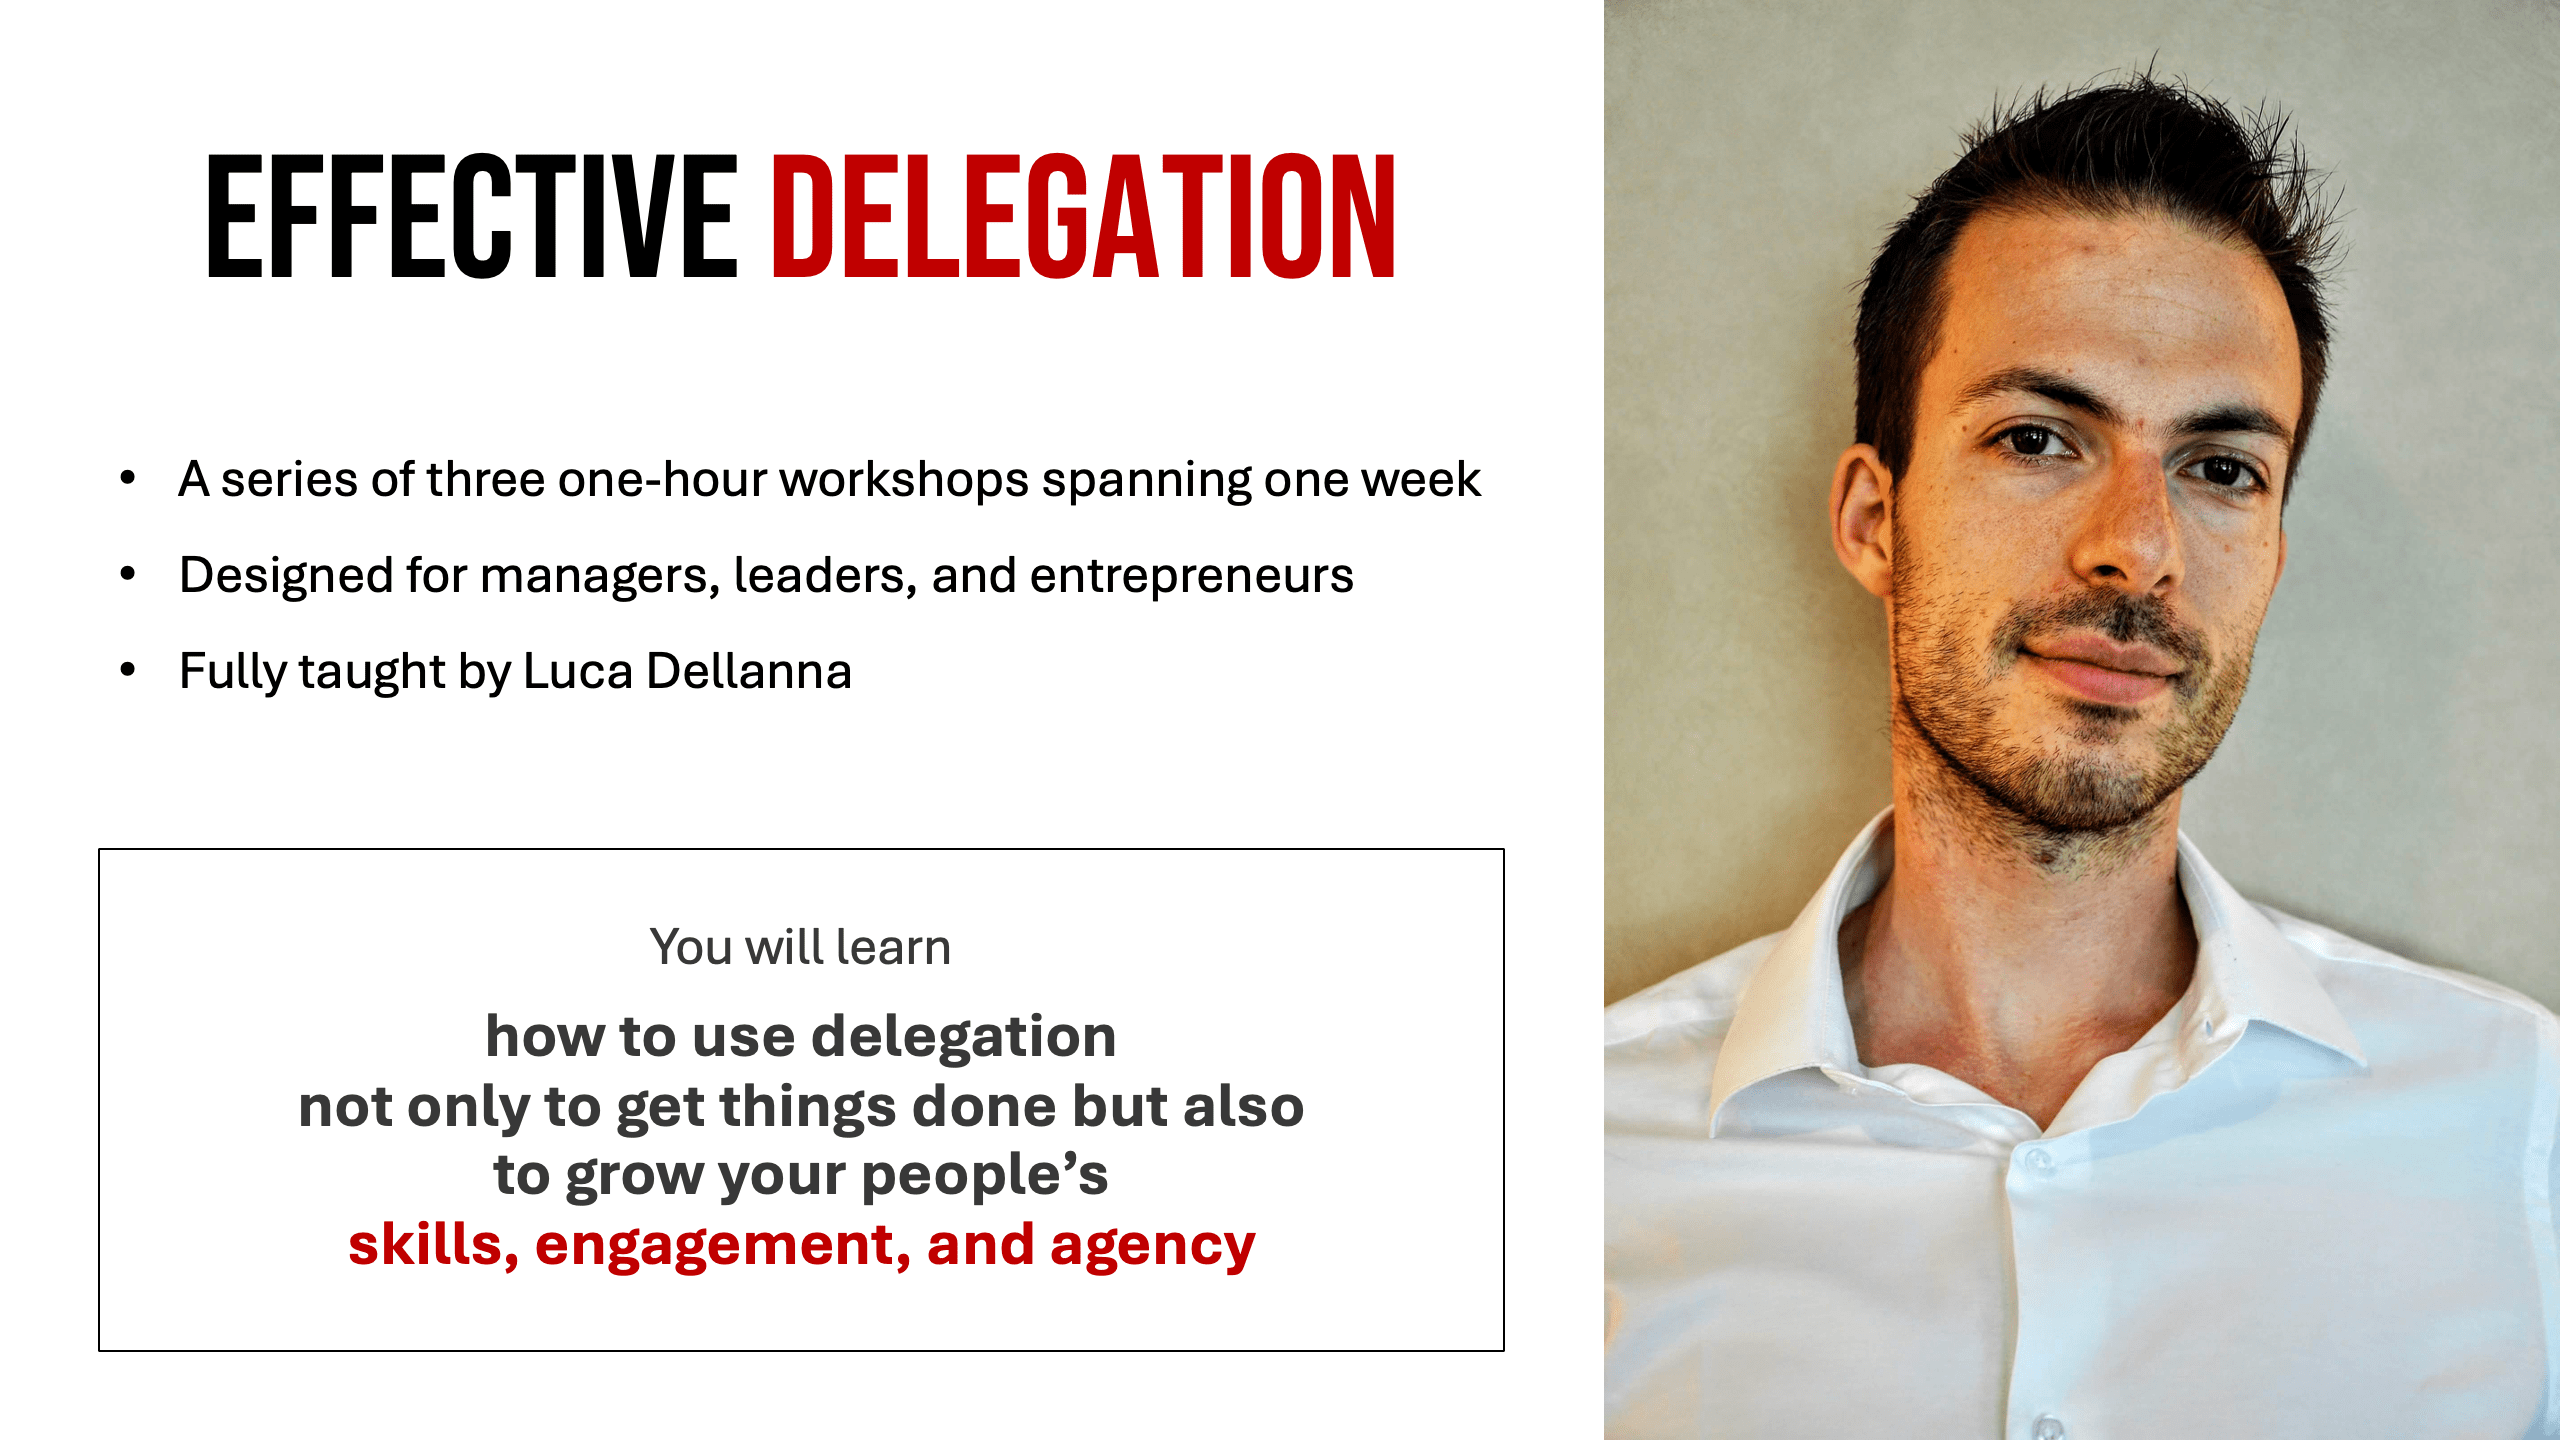 Effective delegation